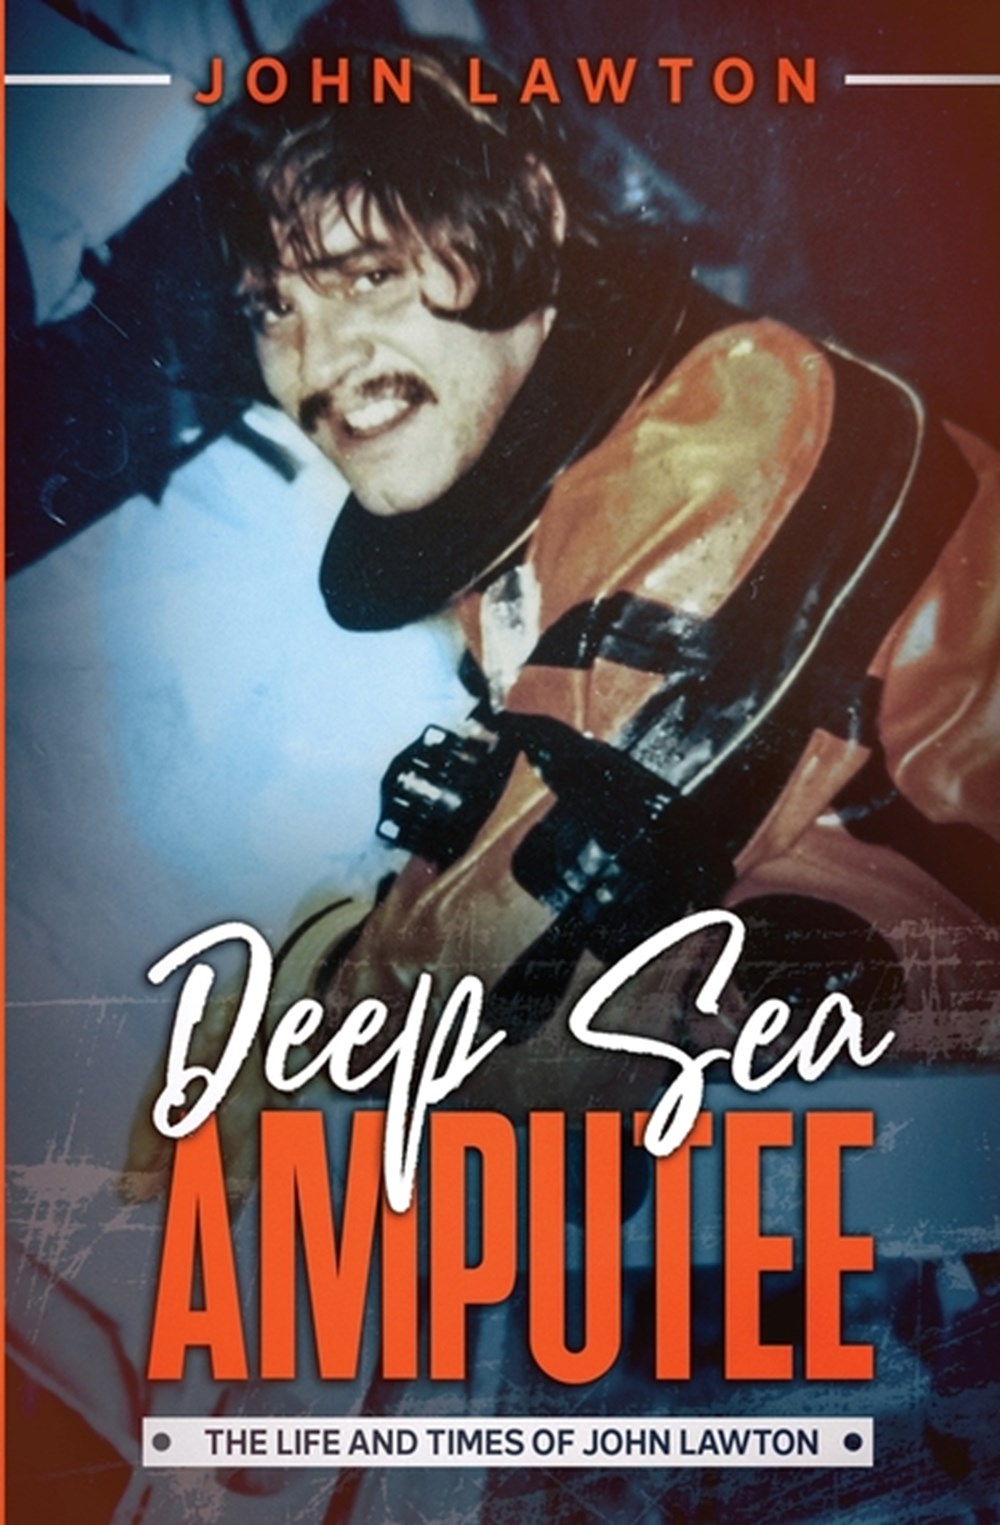 Deep Sea Amputee: The Life and Times of John Lawton